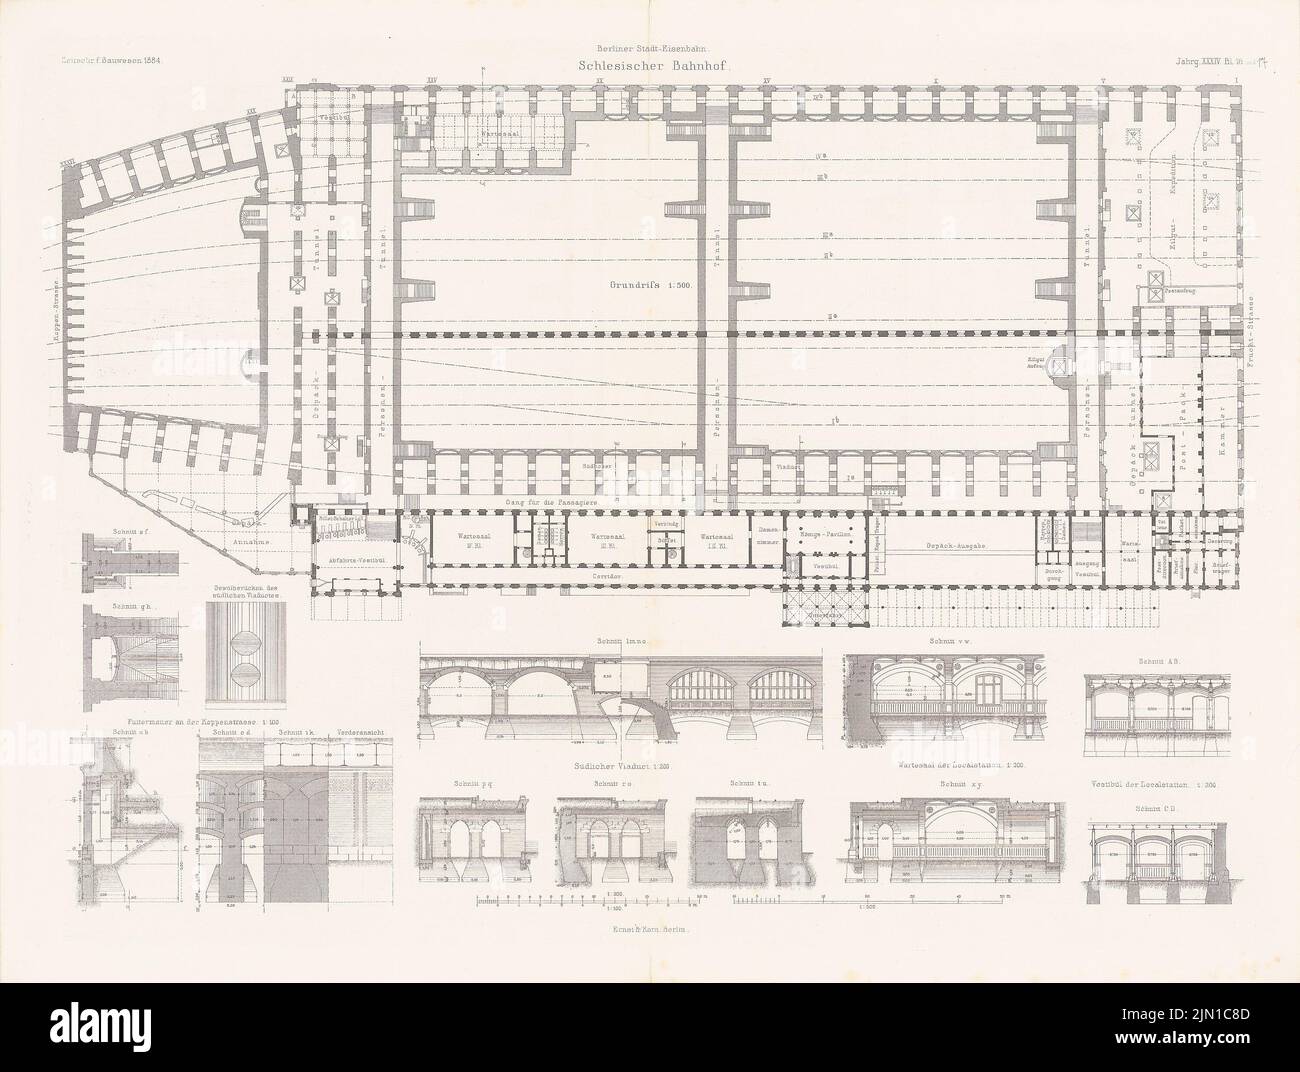 N.N., gare de Silésie, Berlin. (De : Atlas au magazine for Building, éd. V. G. Erbkam, JG. 34, 1884.) (1884-1884): plan d'étage, coupes, détails. Coudre sur du papier, 45,5 x 60,3 cm (y compris les bords de numérisation) N. : Schlesischer Bahnhof, Berlin. (AUS: Atlas zur Zeitschrift für Bauwesen, hrsg. V. G. Erbkam, JG. 34, 1884) Banque D'Images